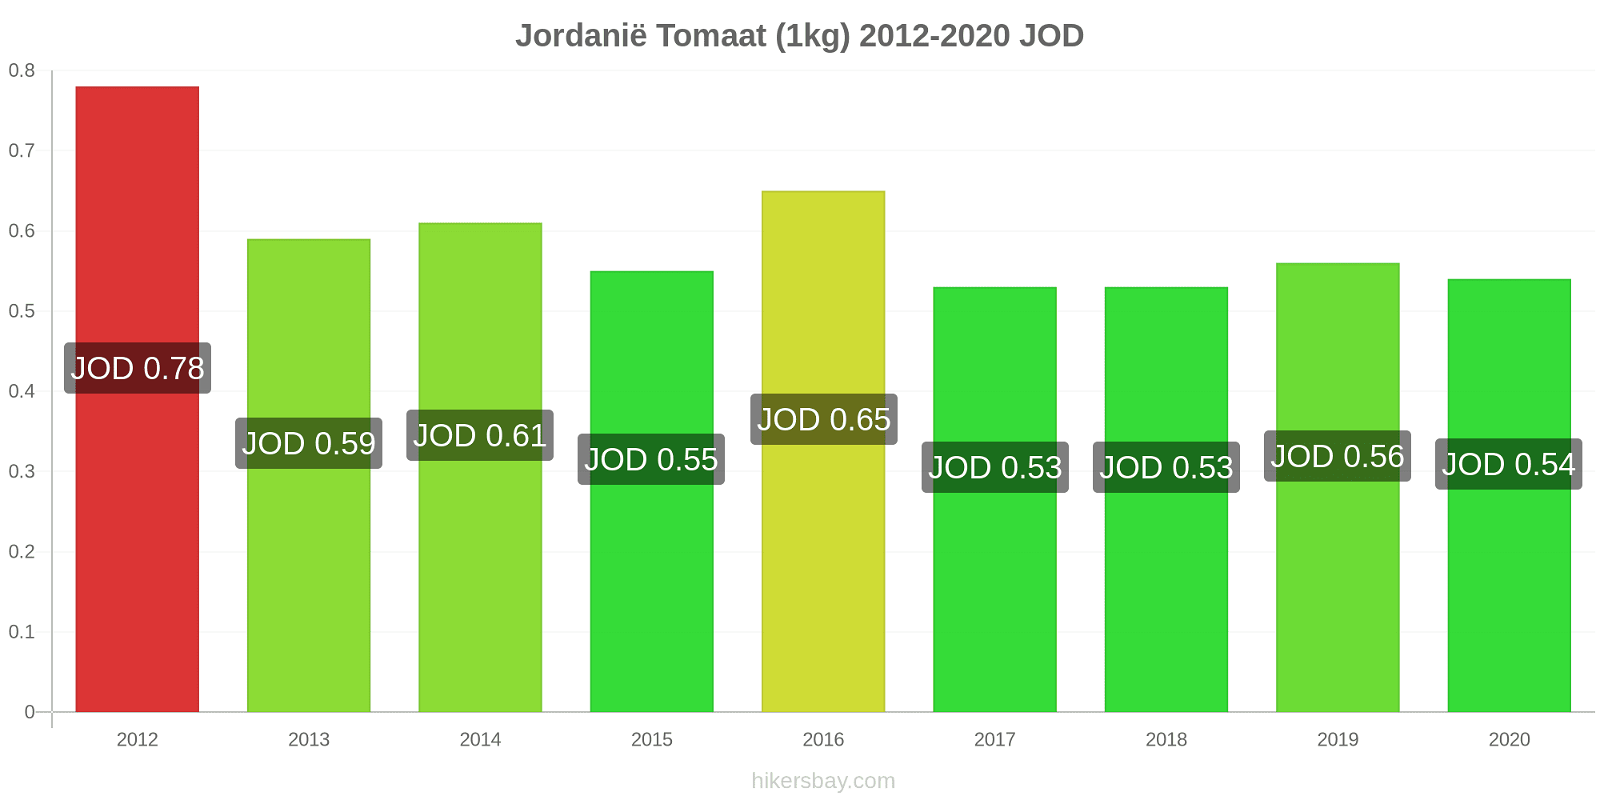 Jordanië prijswijzigingen Tomaat (1kg) hikersbay.com